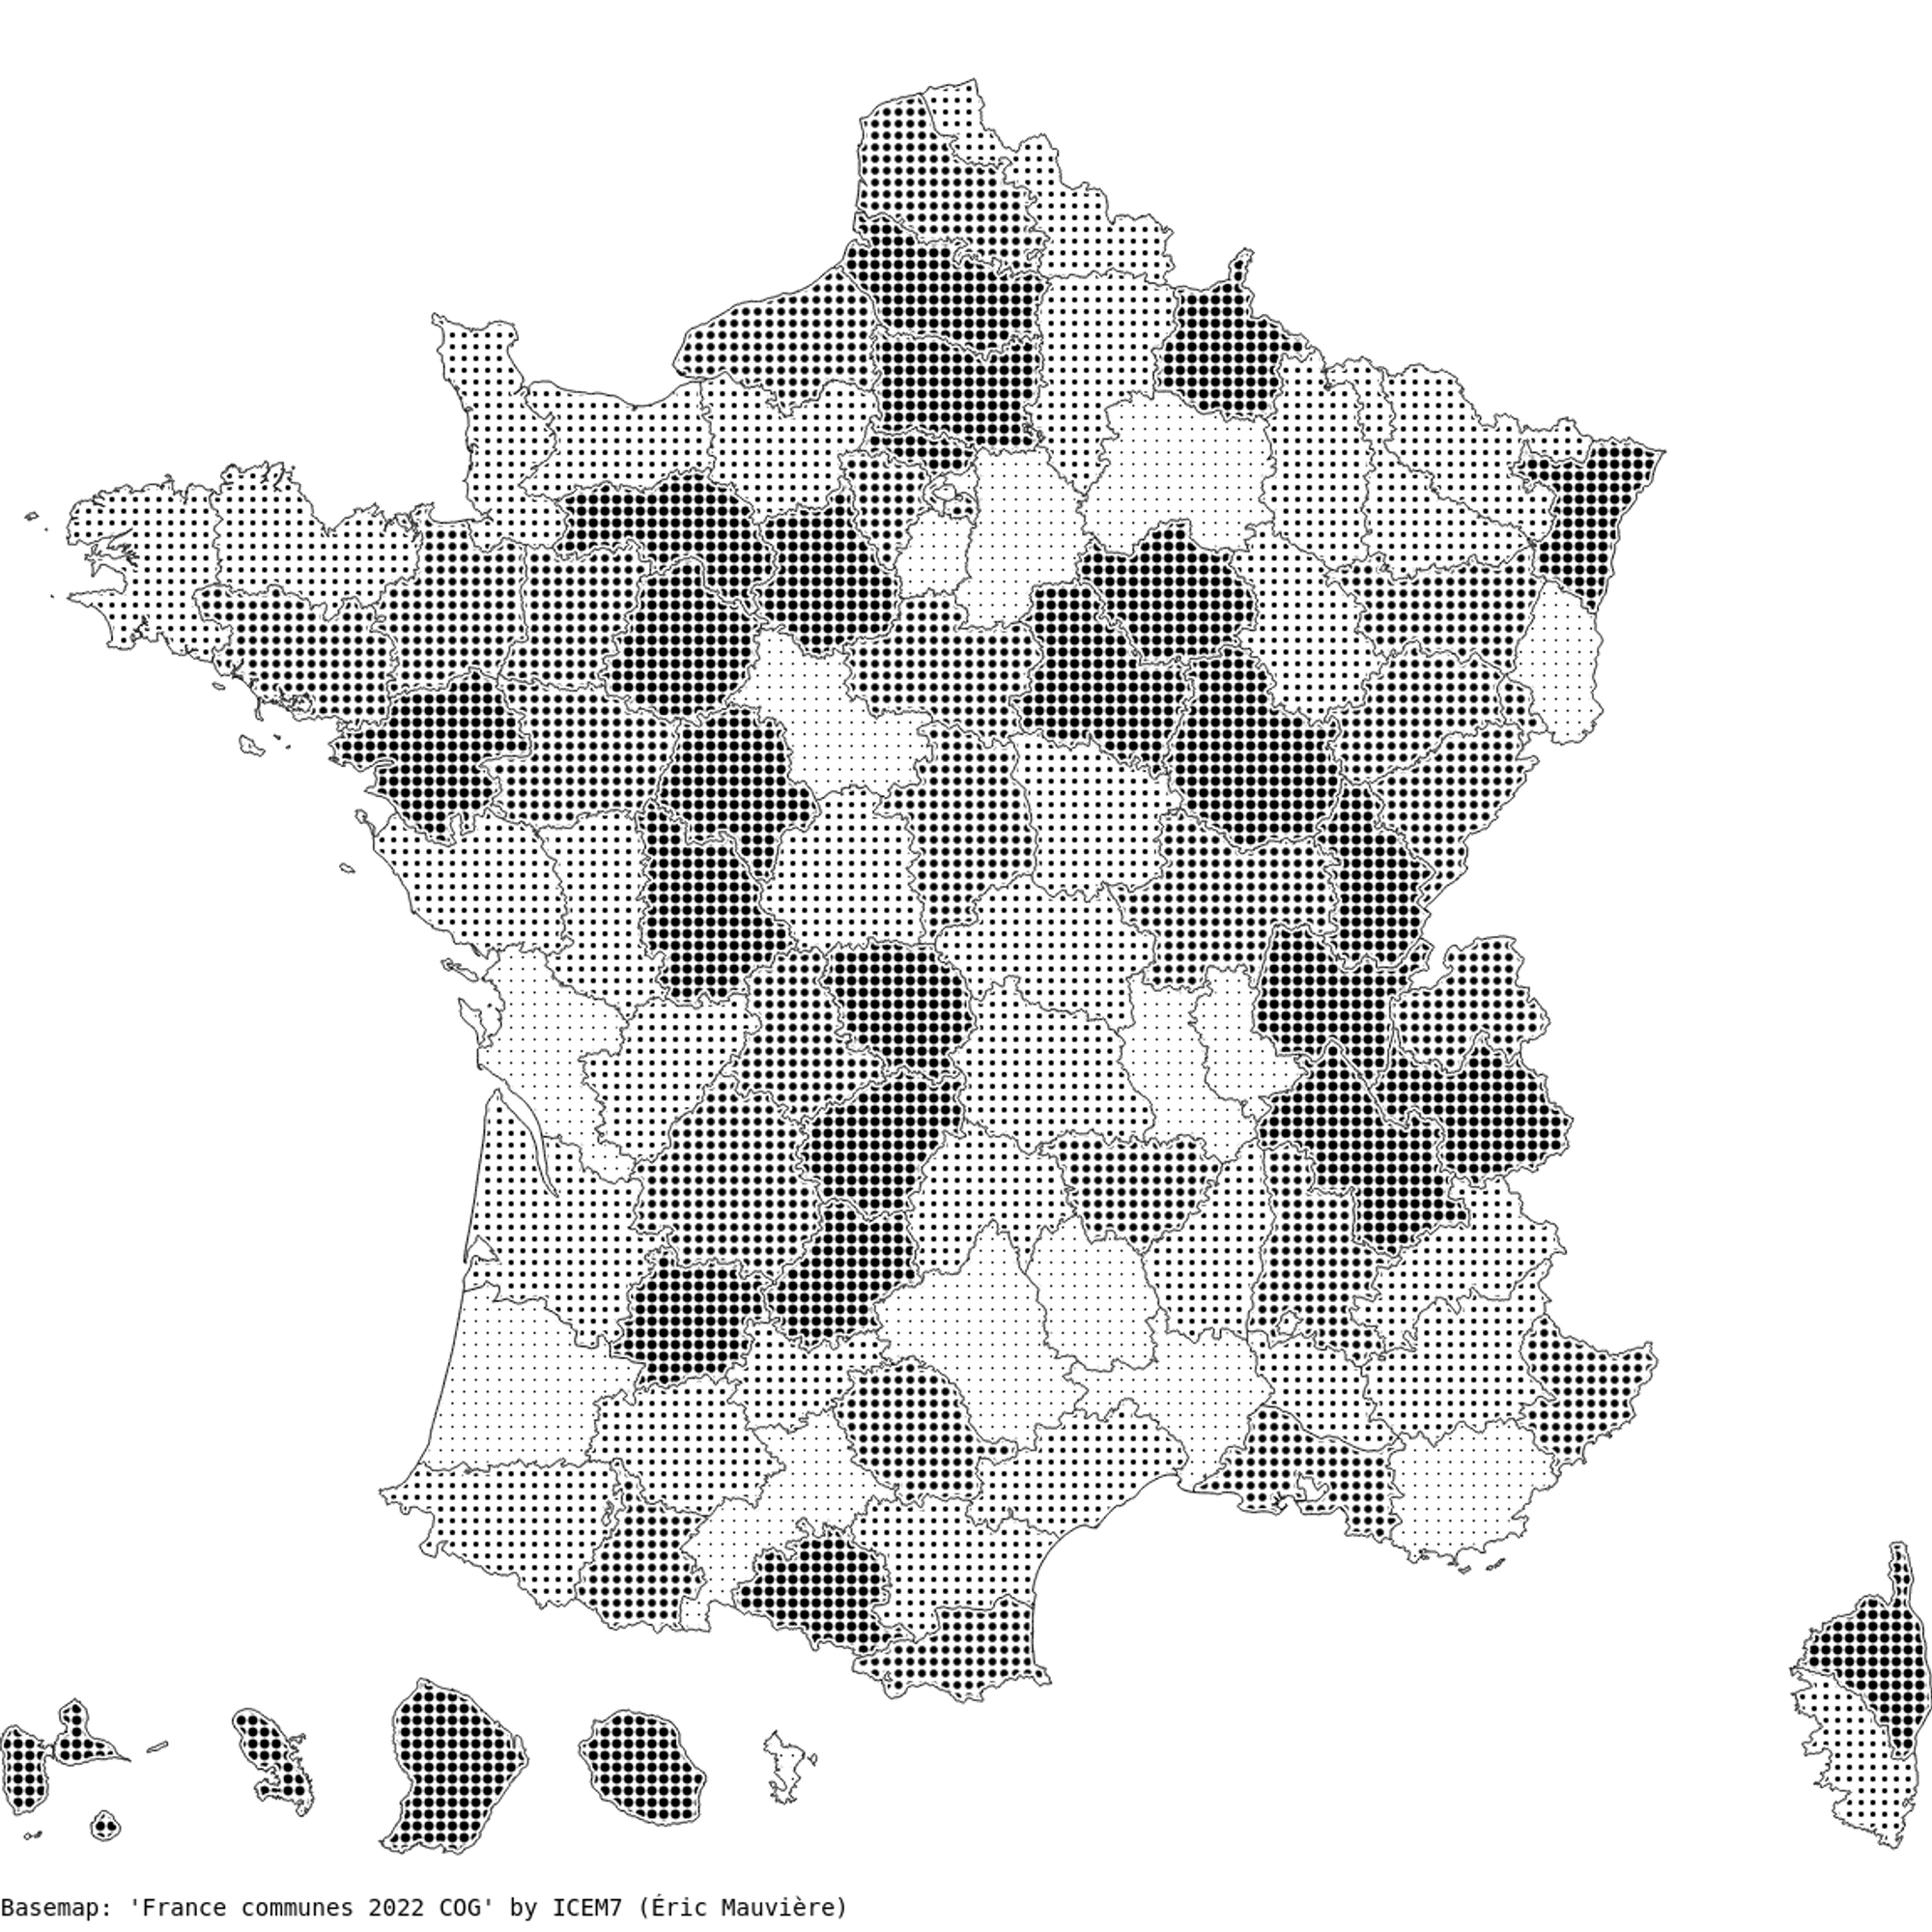 Une carte de France tout en hachures